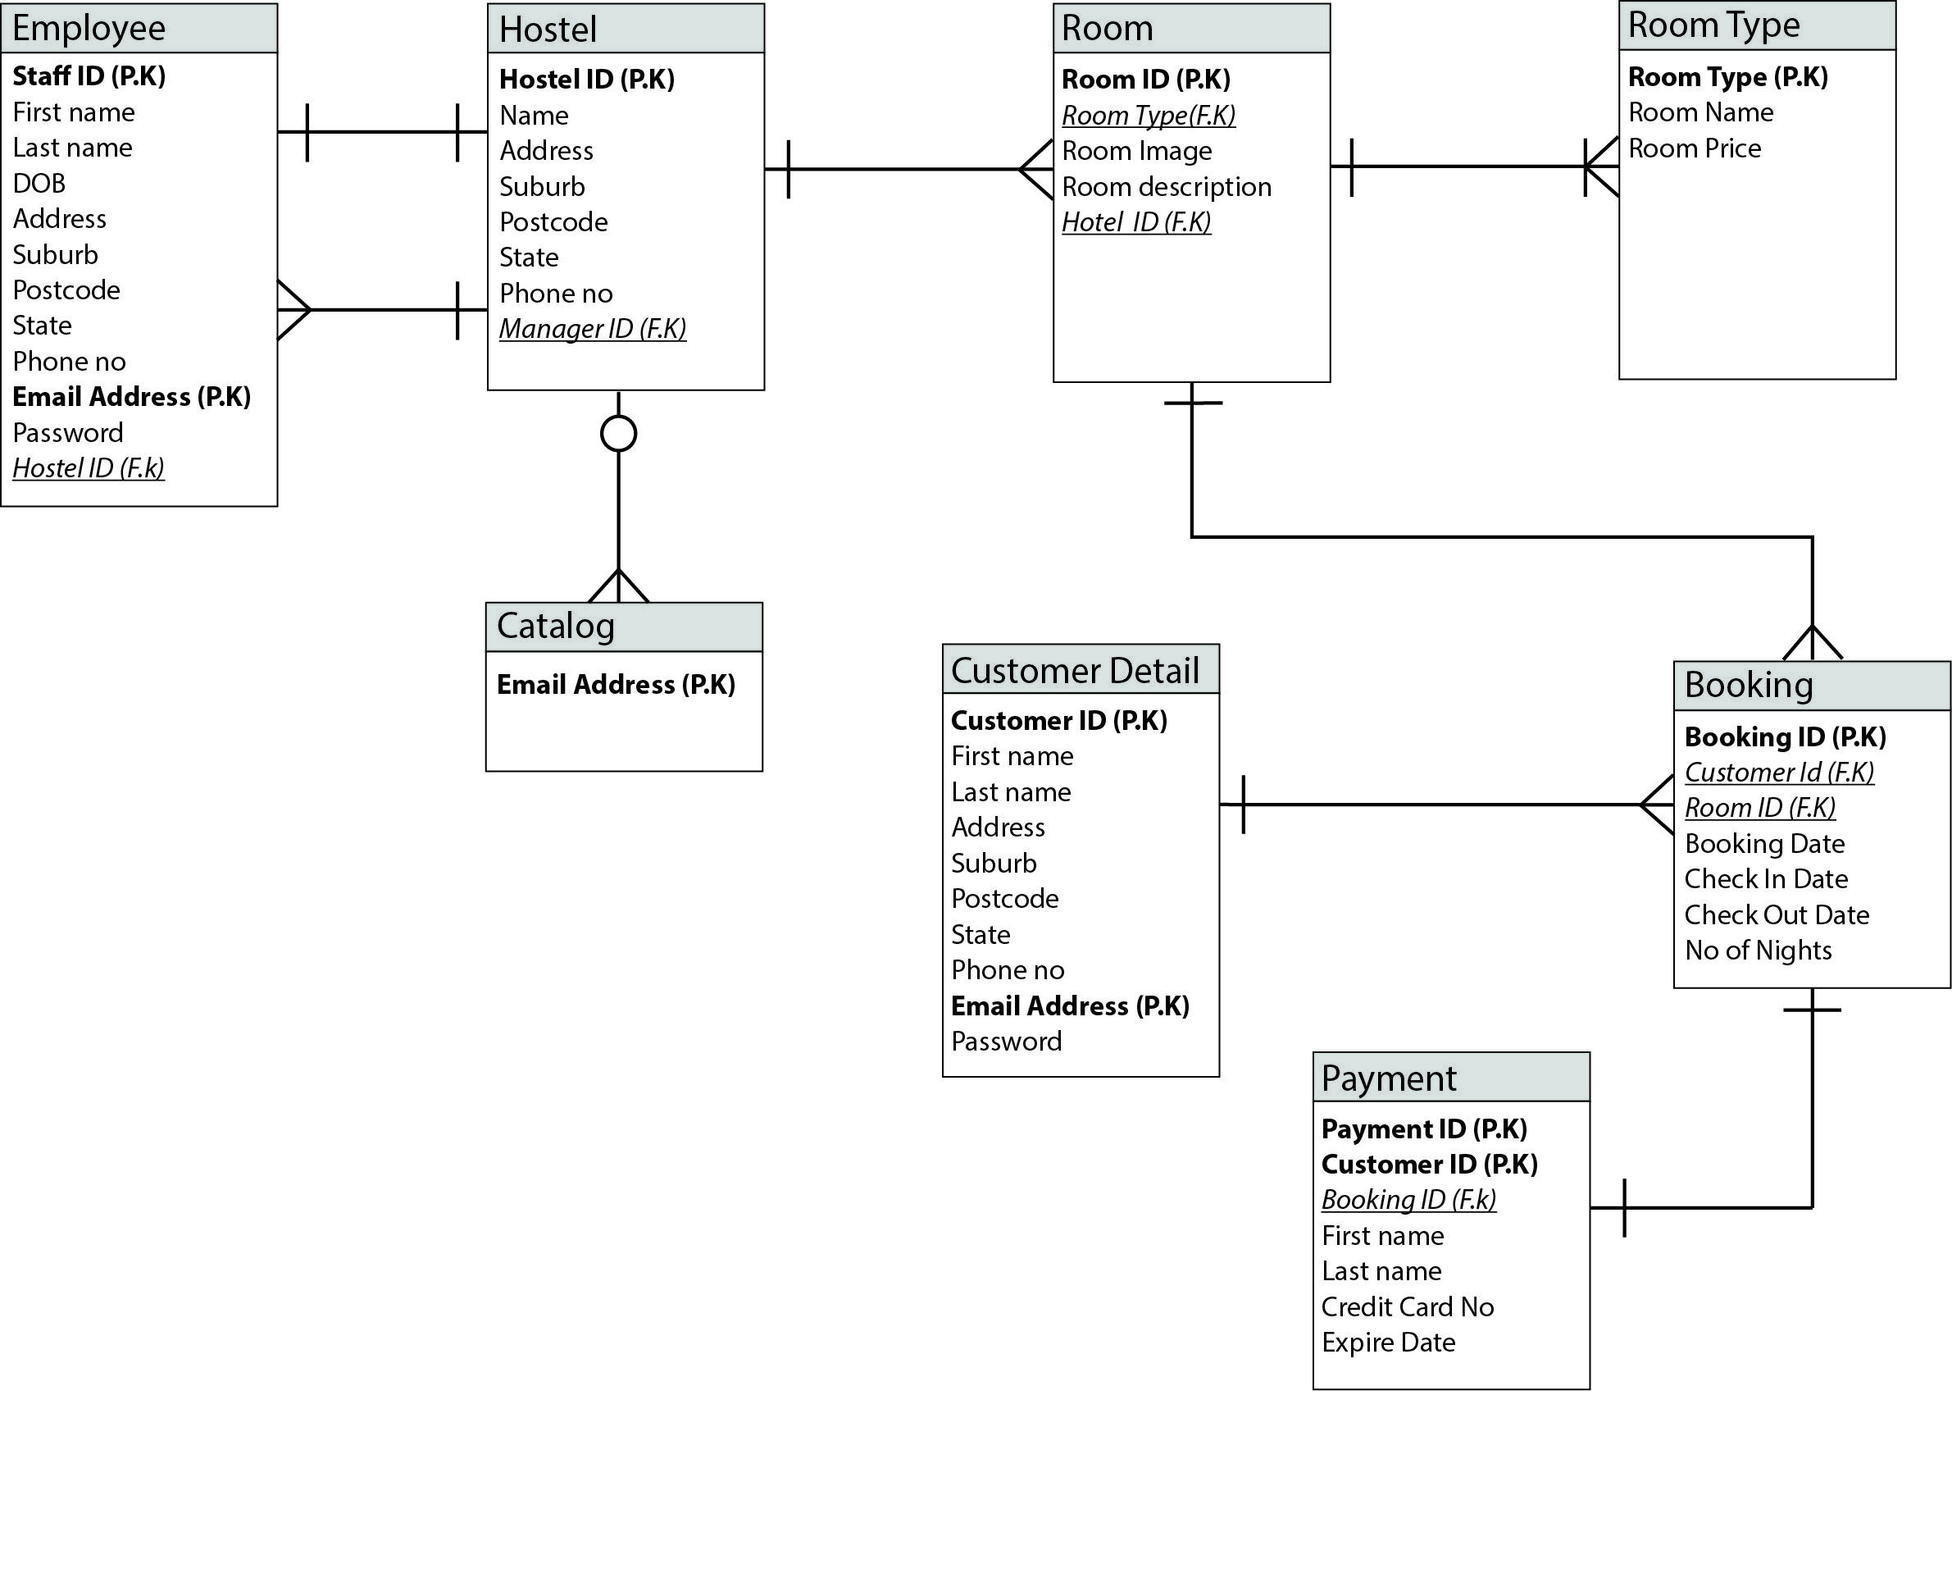 Online Hostel Management System Er Diagram - Database within Entity Relationship Diagram In Database Management System